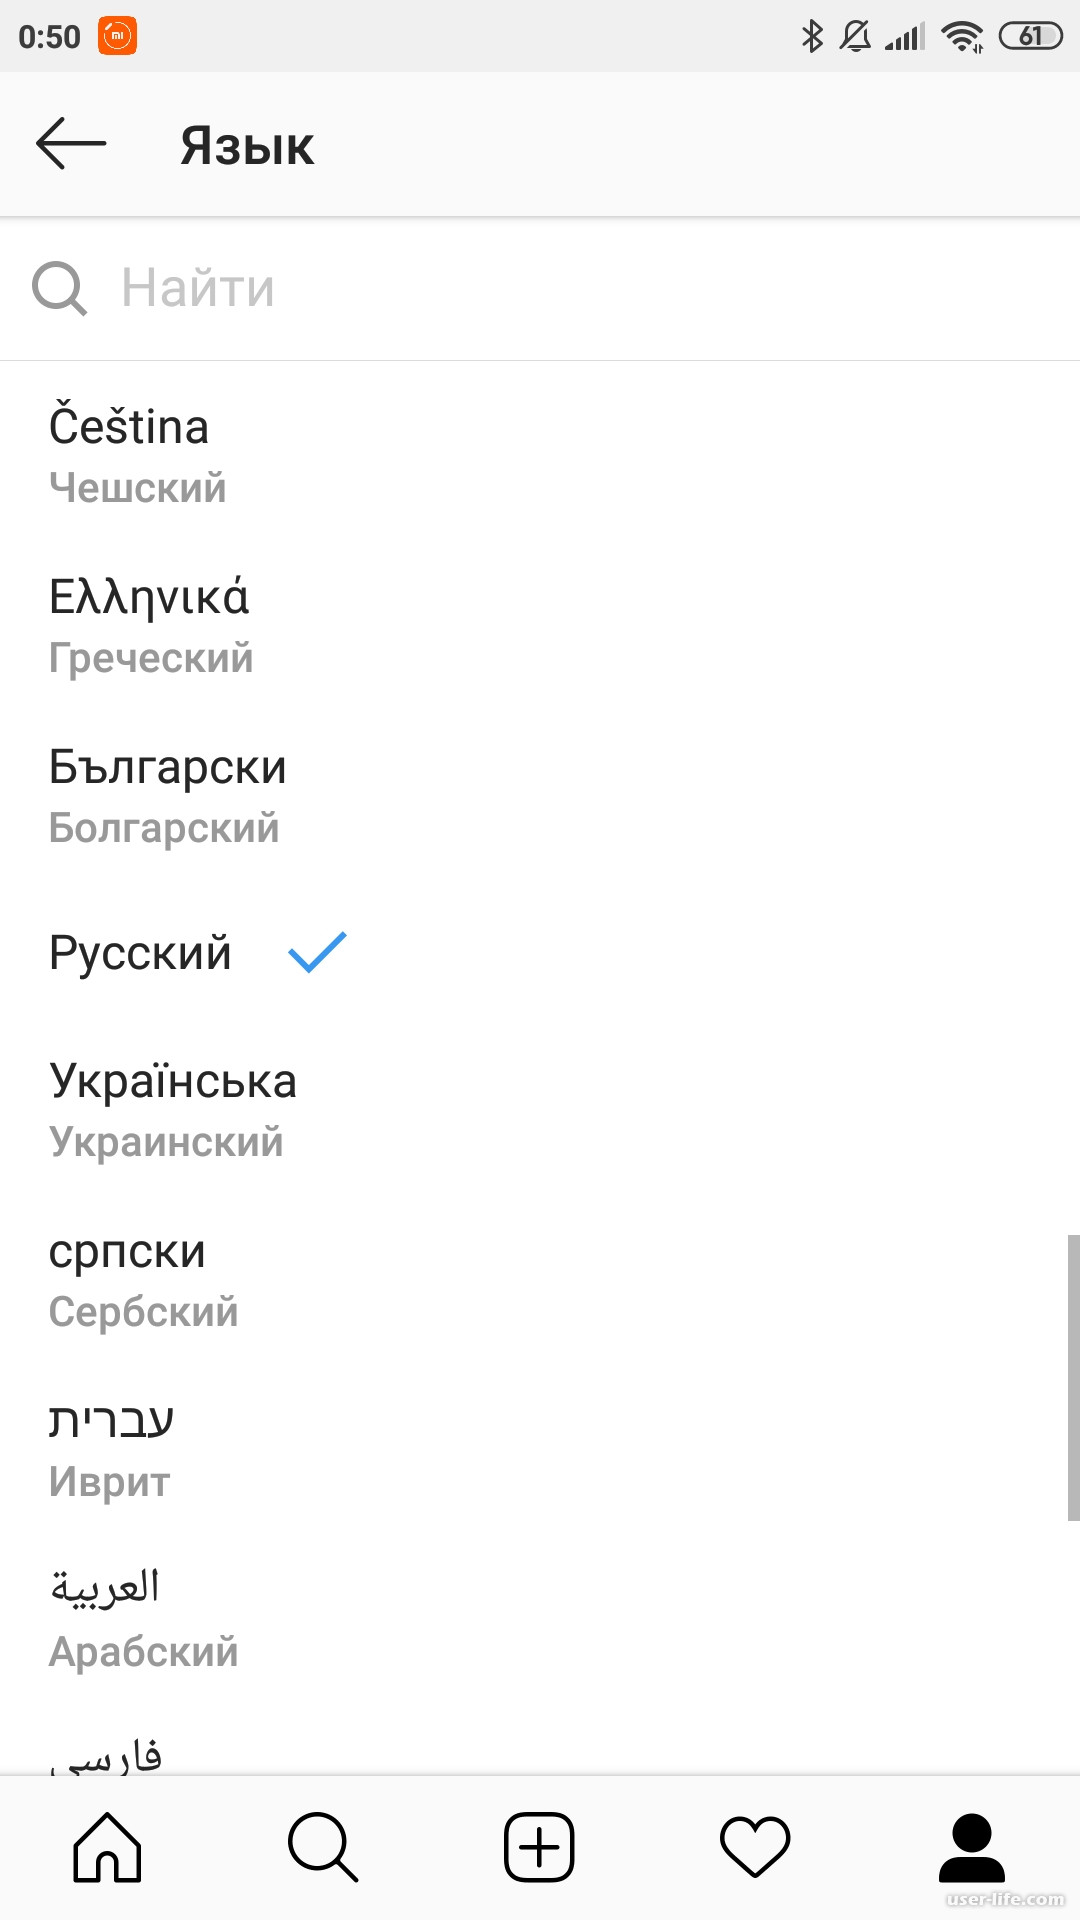 Как поменять язык в телеграмме на русский на андроиде с английского на русский язык фото 65